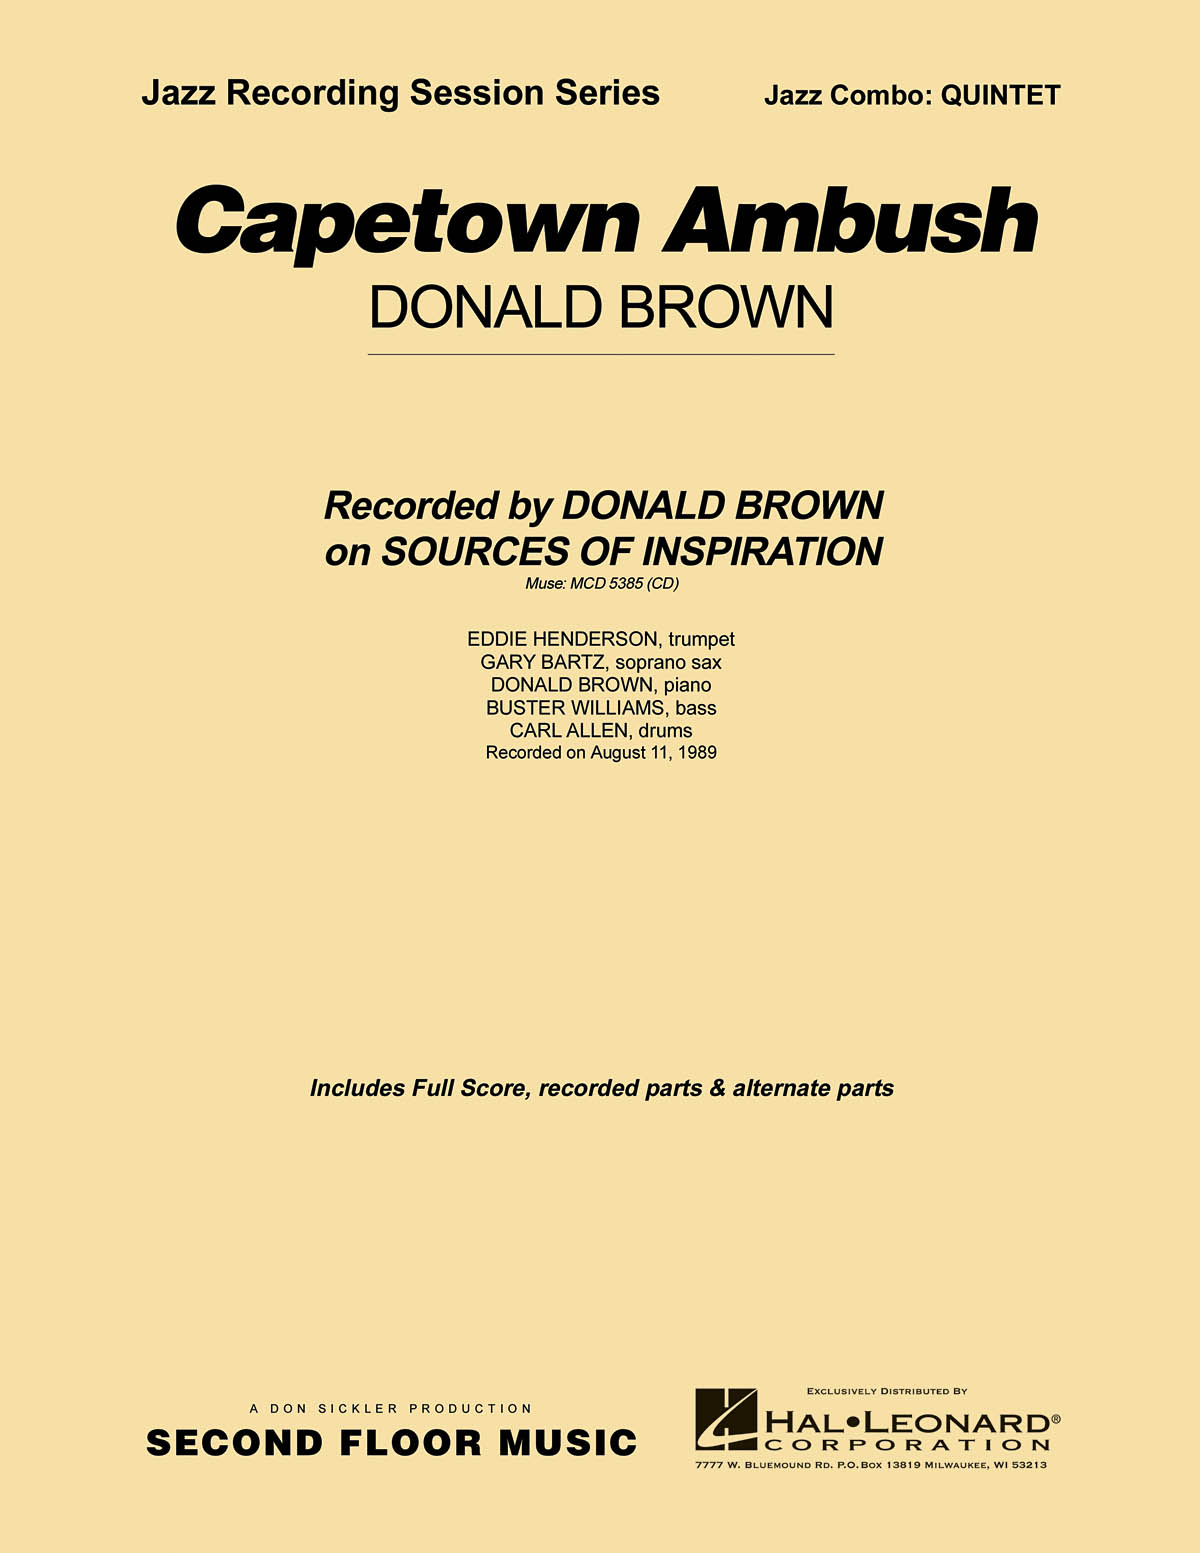 Donald Brown: Capetown Ambush: Jazz Ensemble: Score